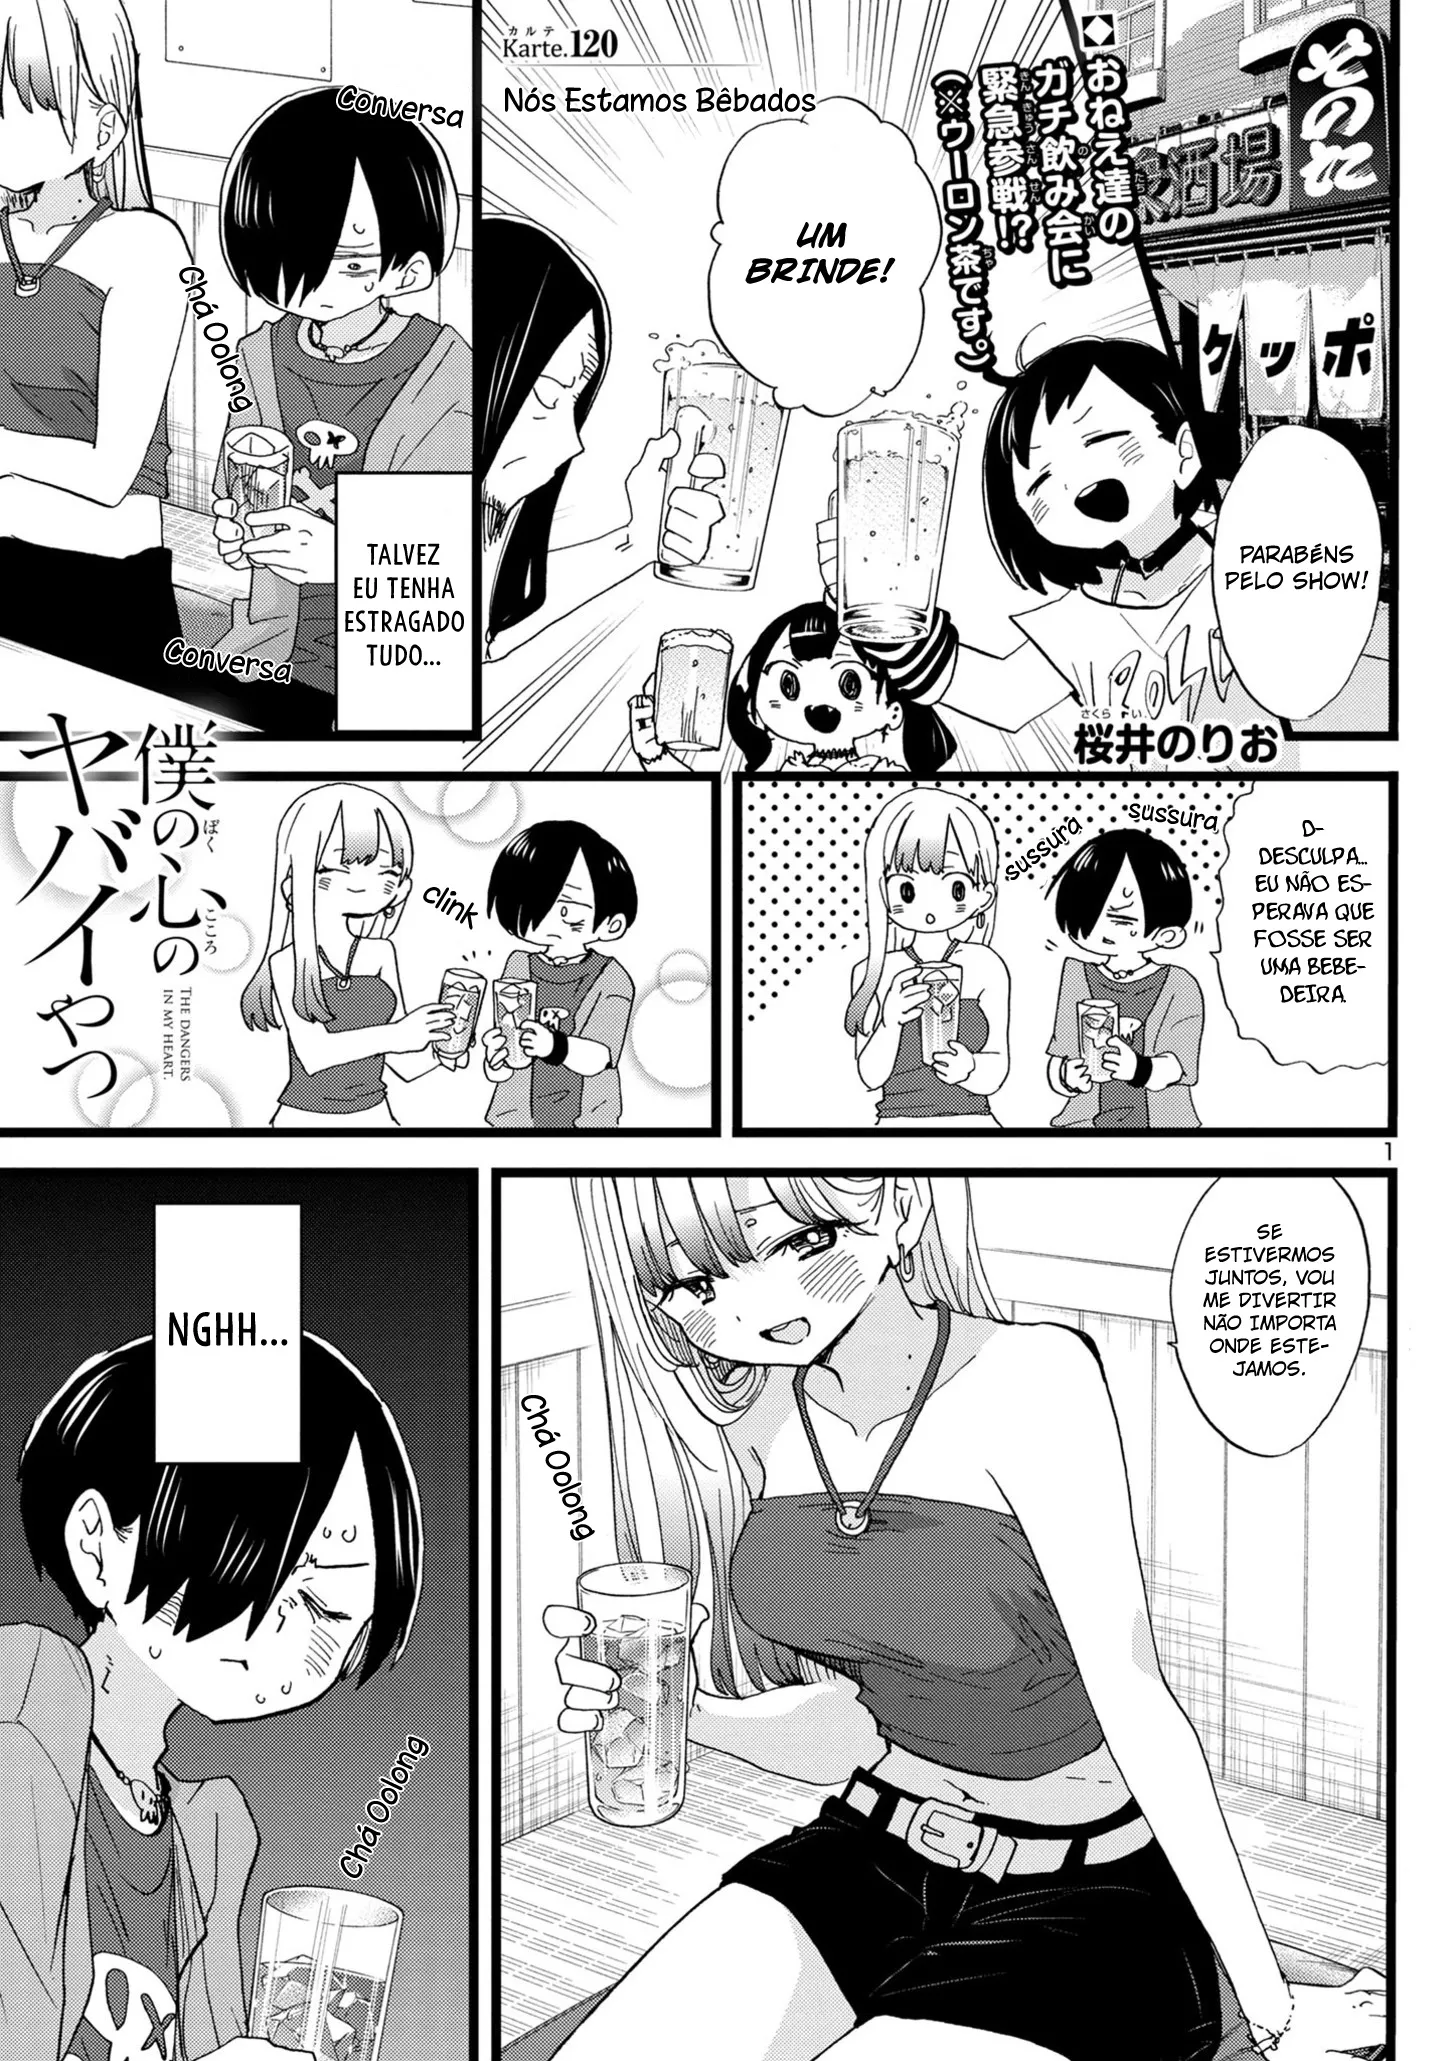 Boku no Kokoro no Yabai Yatsu Capítulo 113 - Manga Online